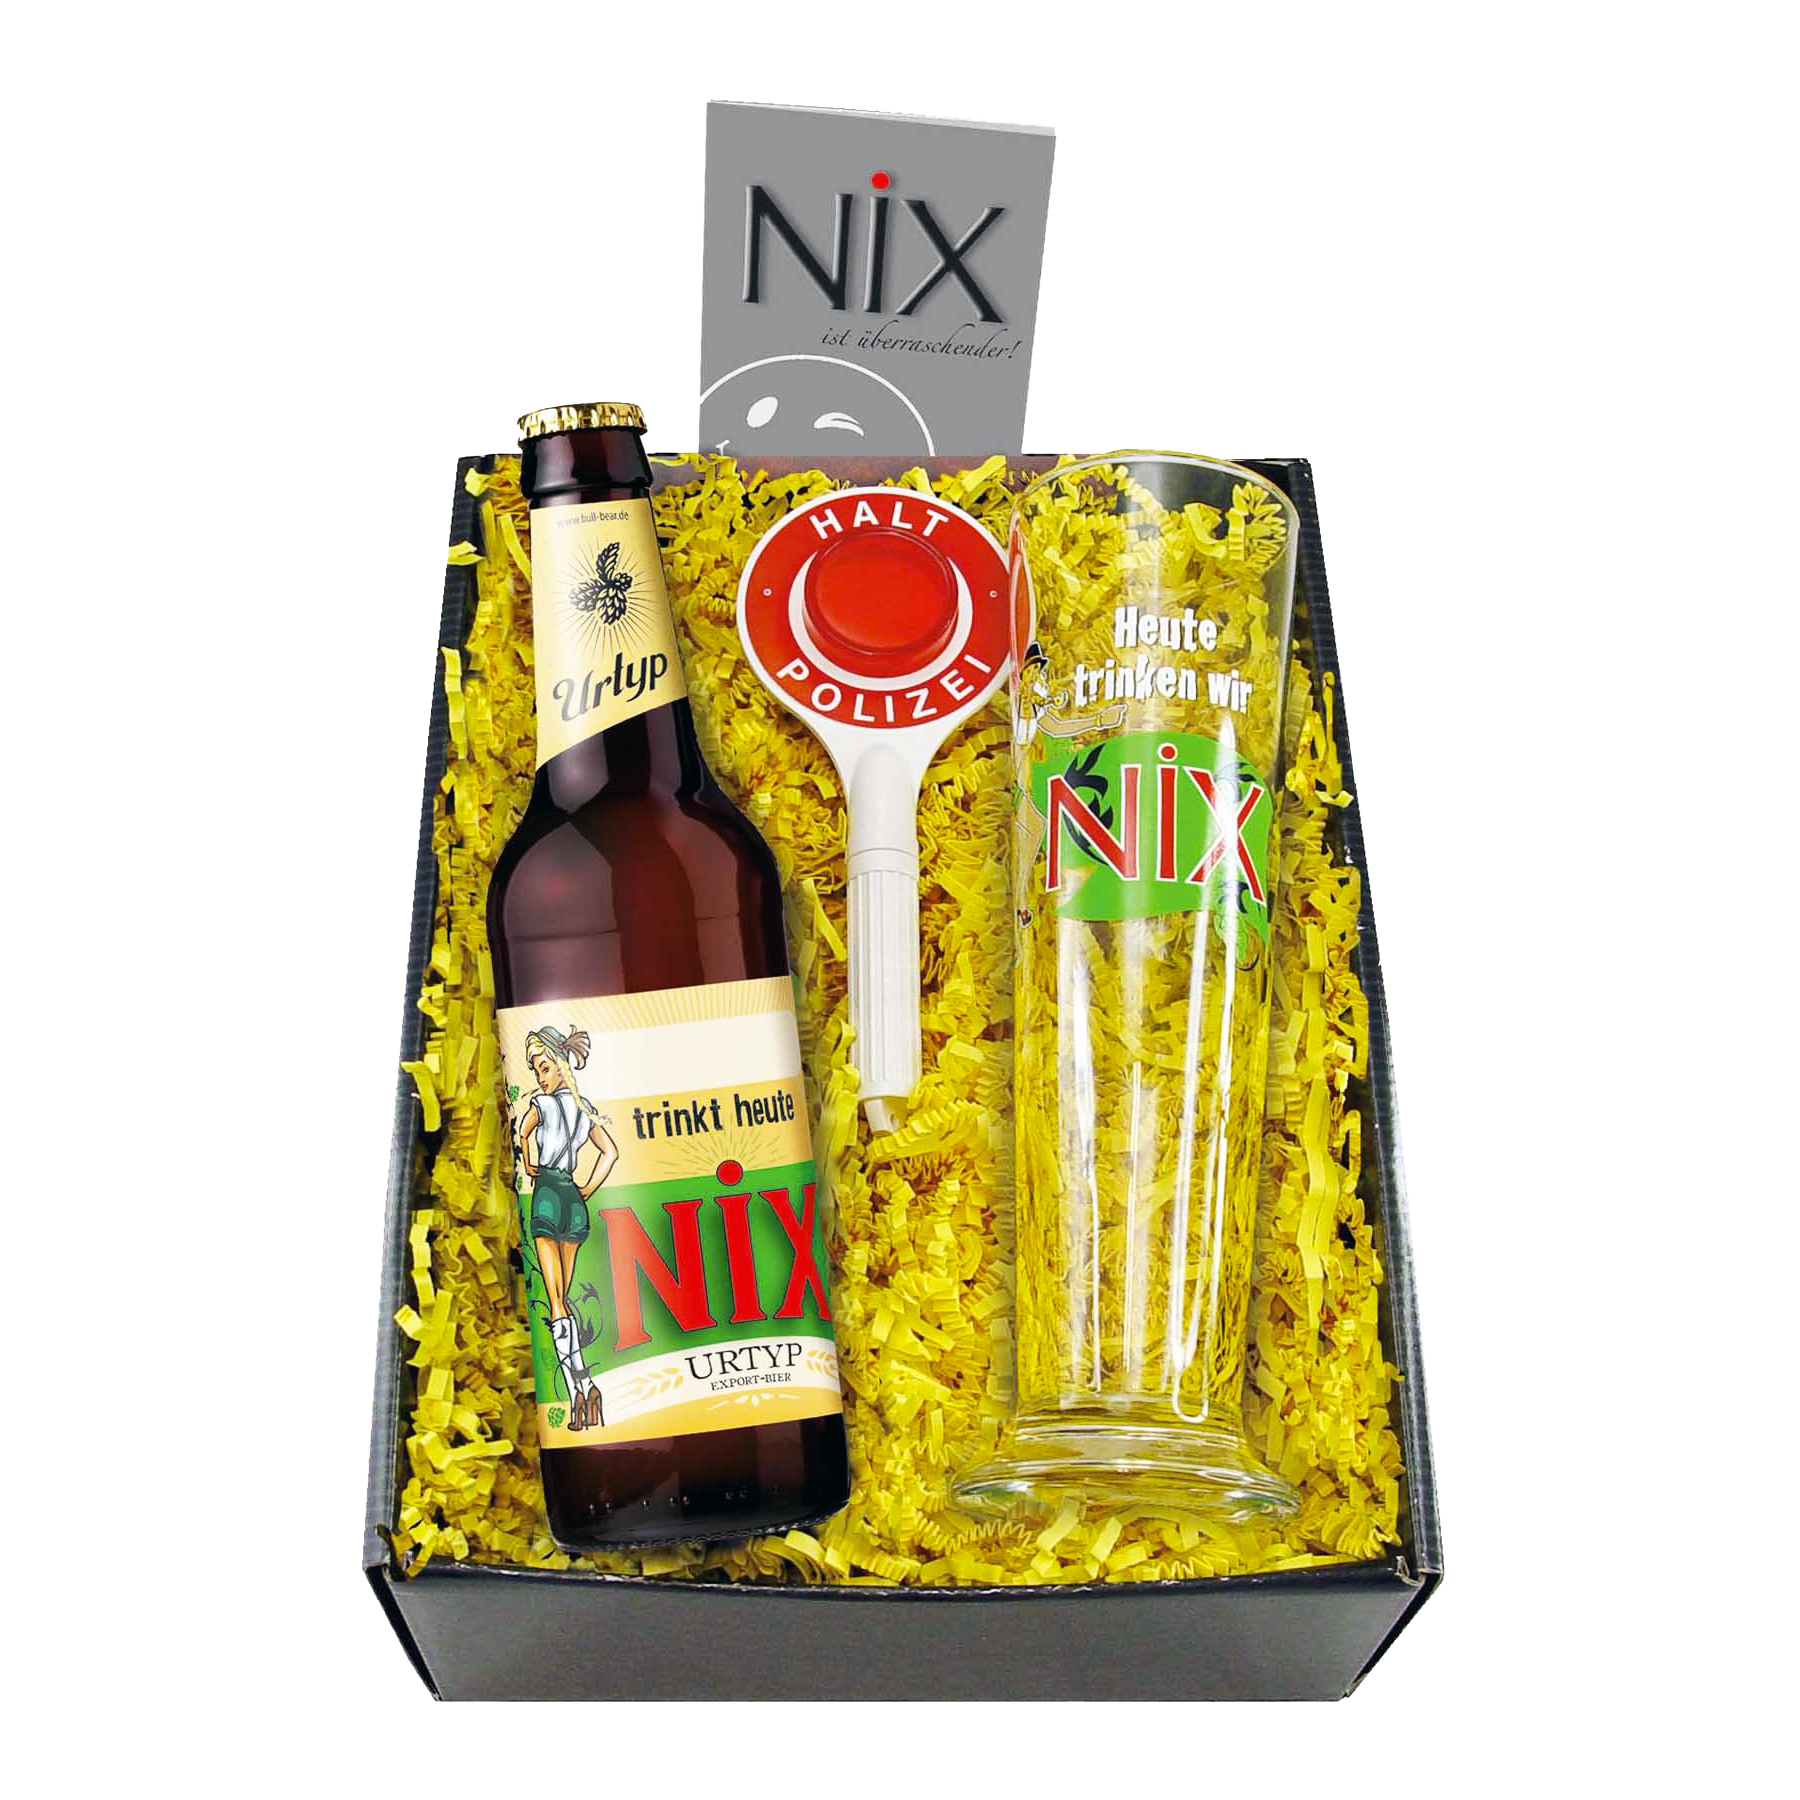 NiX im Glas - Biergeschenk Box